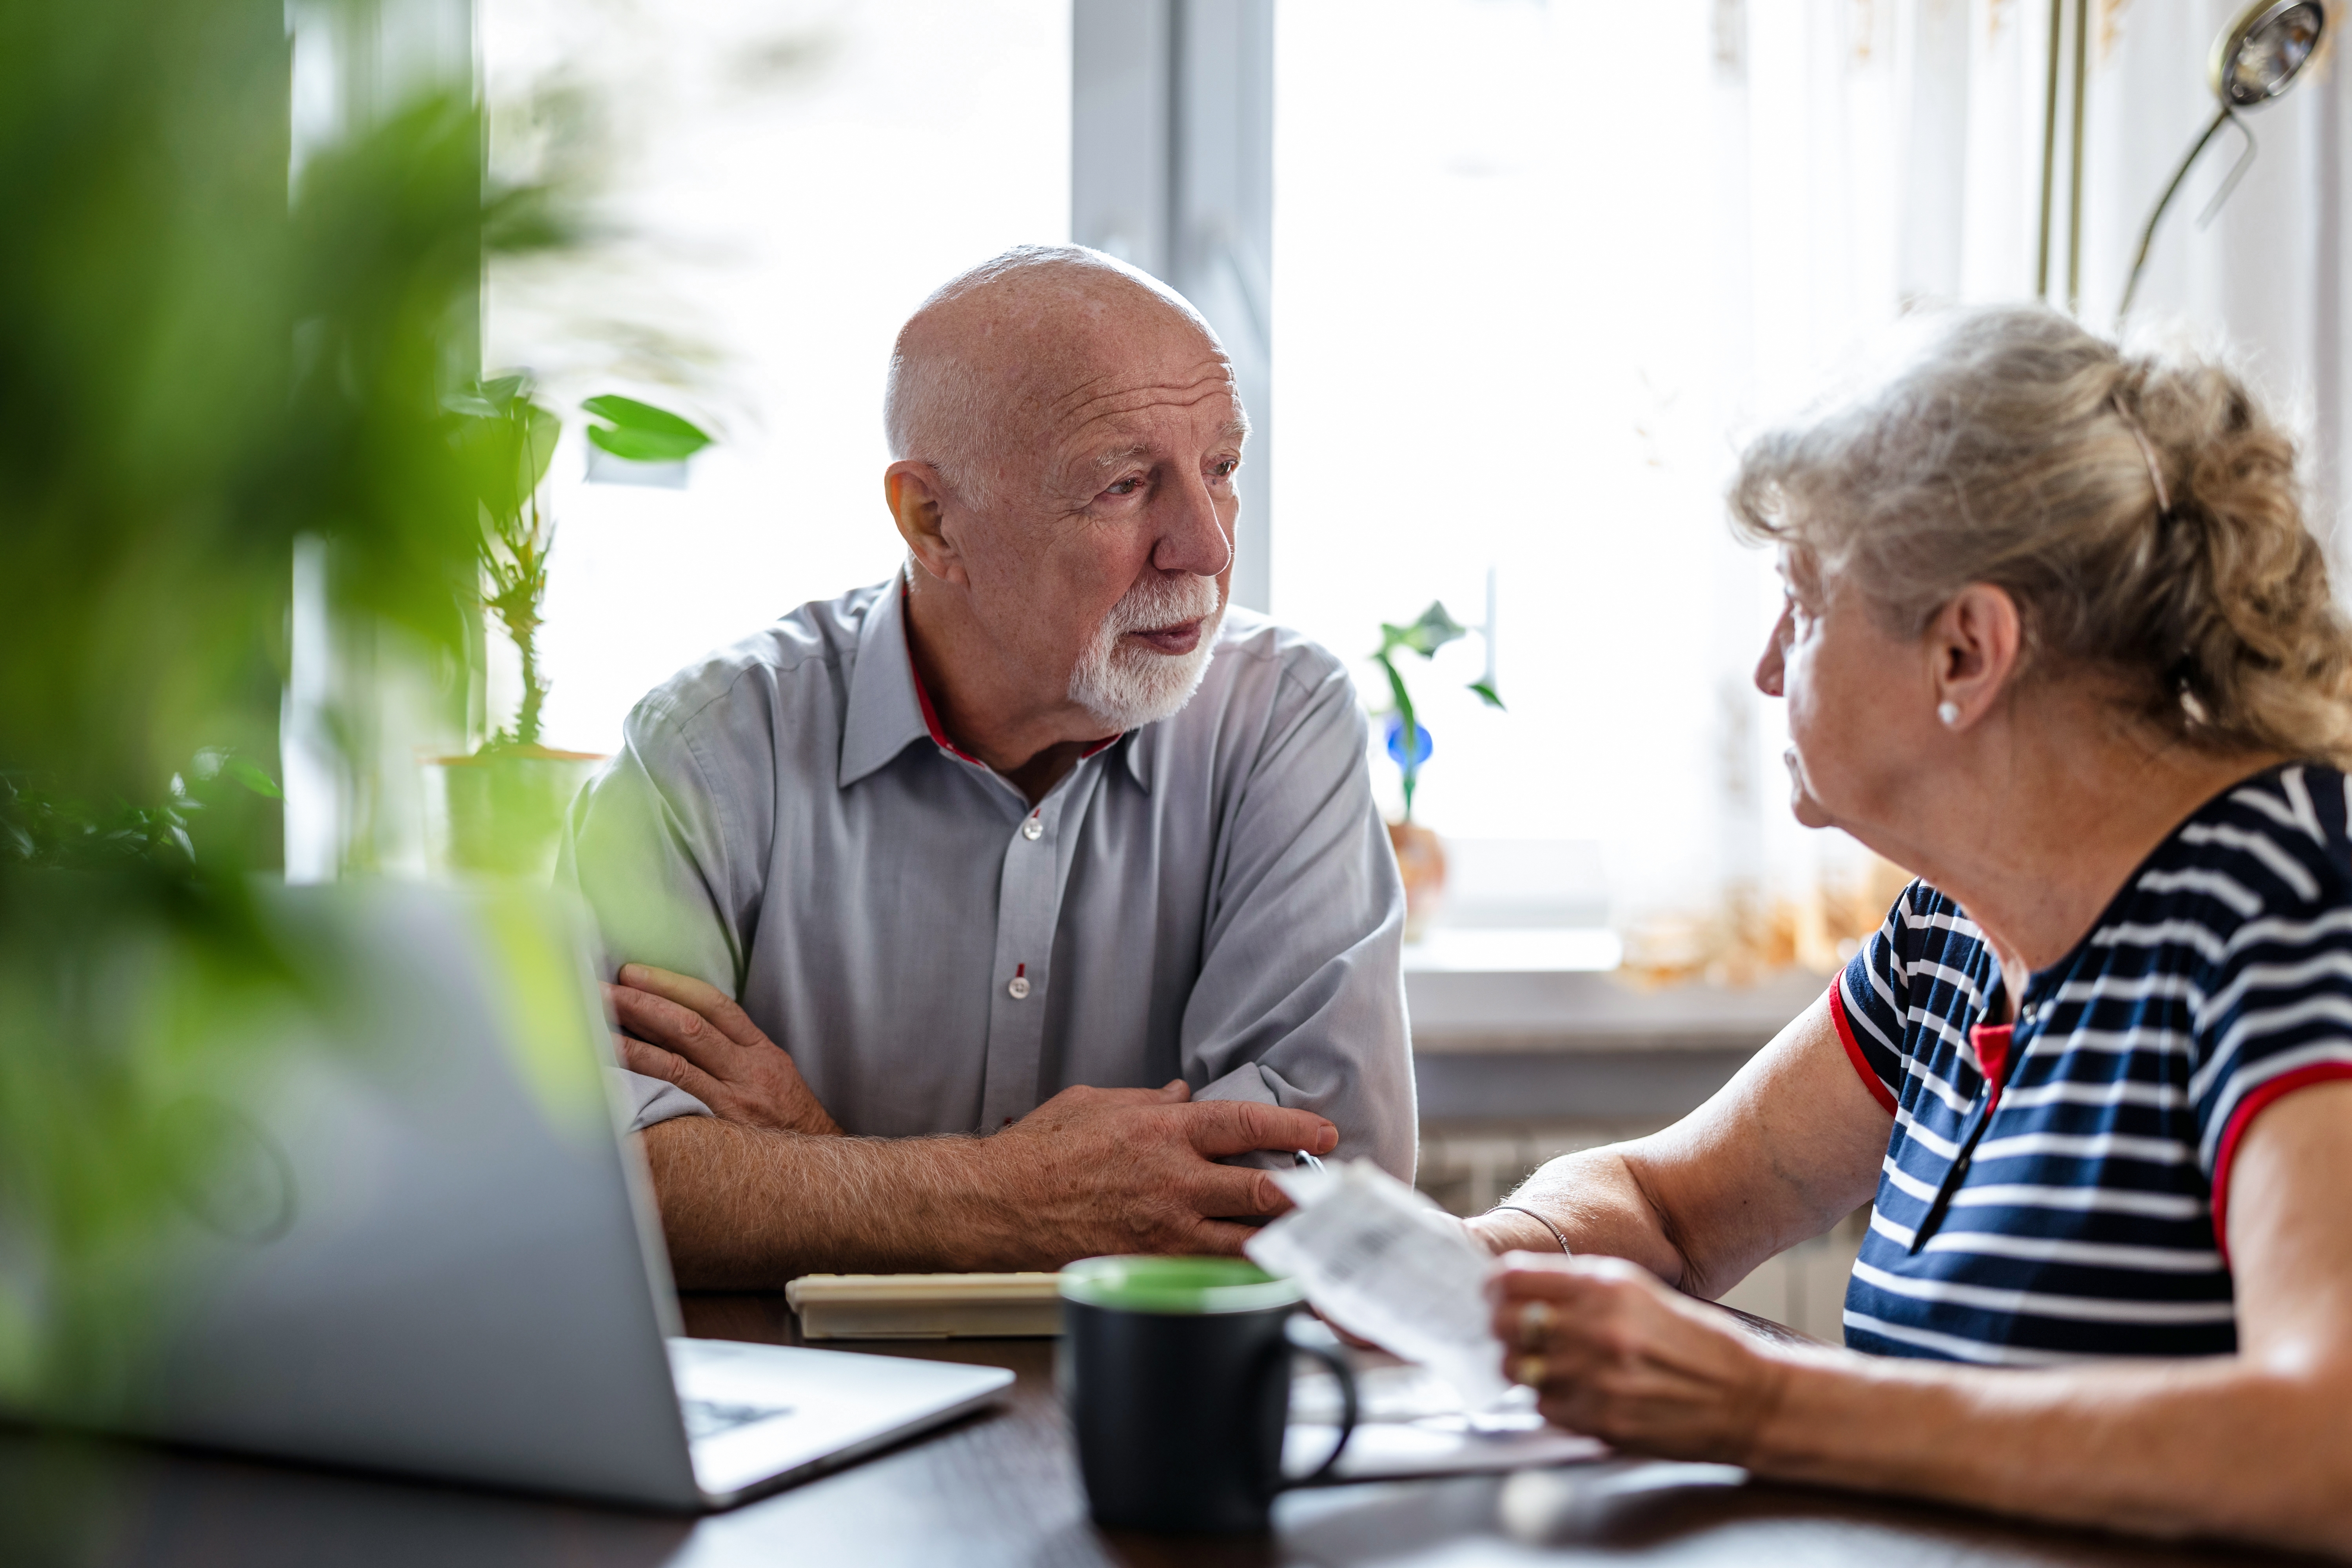 Ein älteres Paar im Gespräch | Quelle: Shutterstock